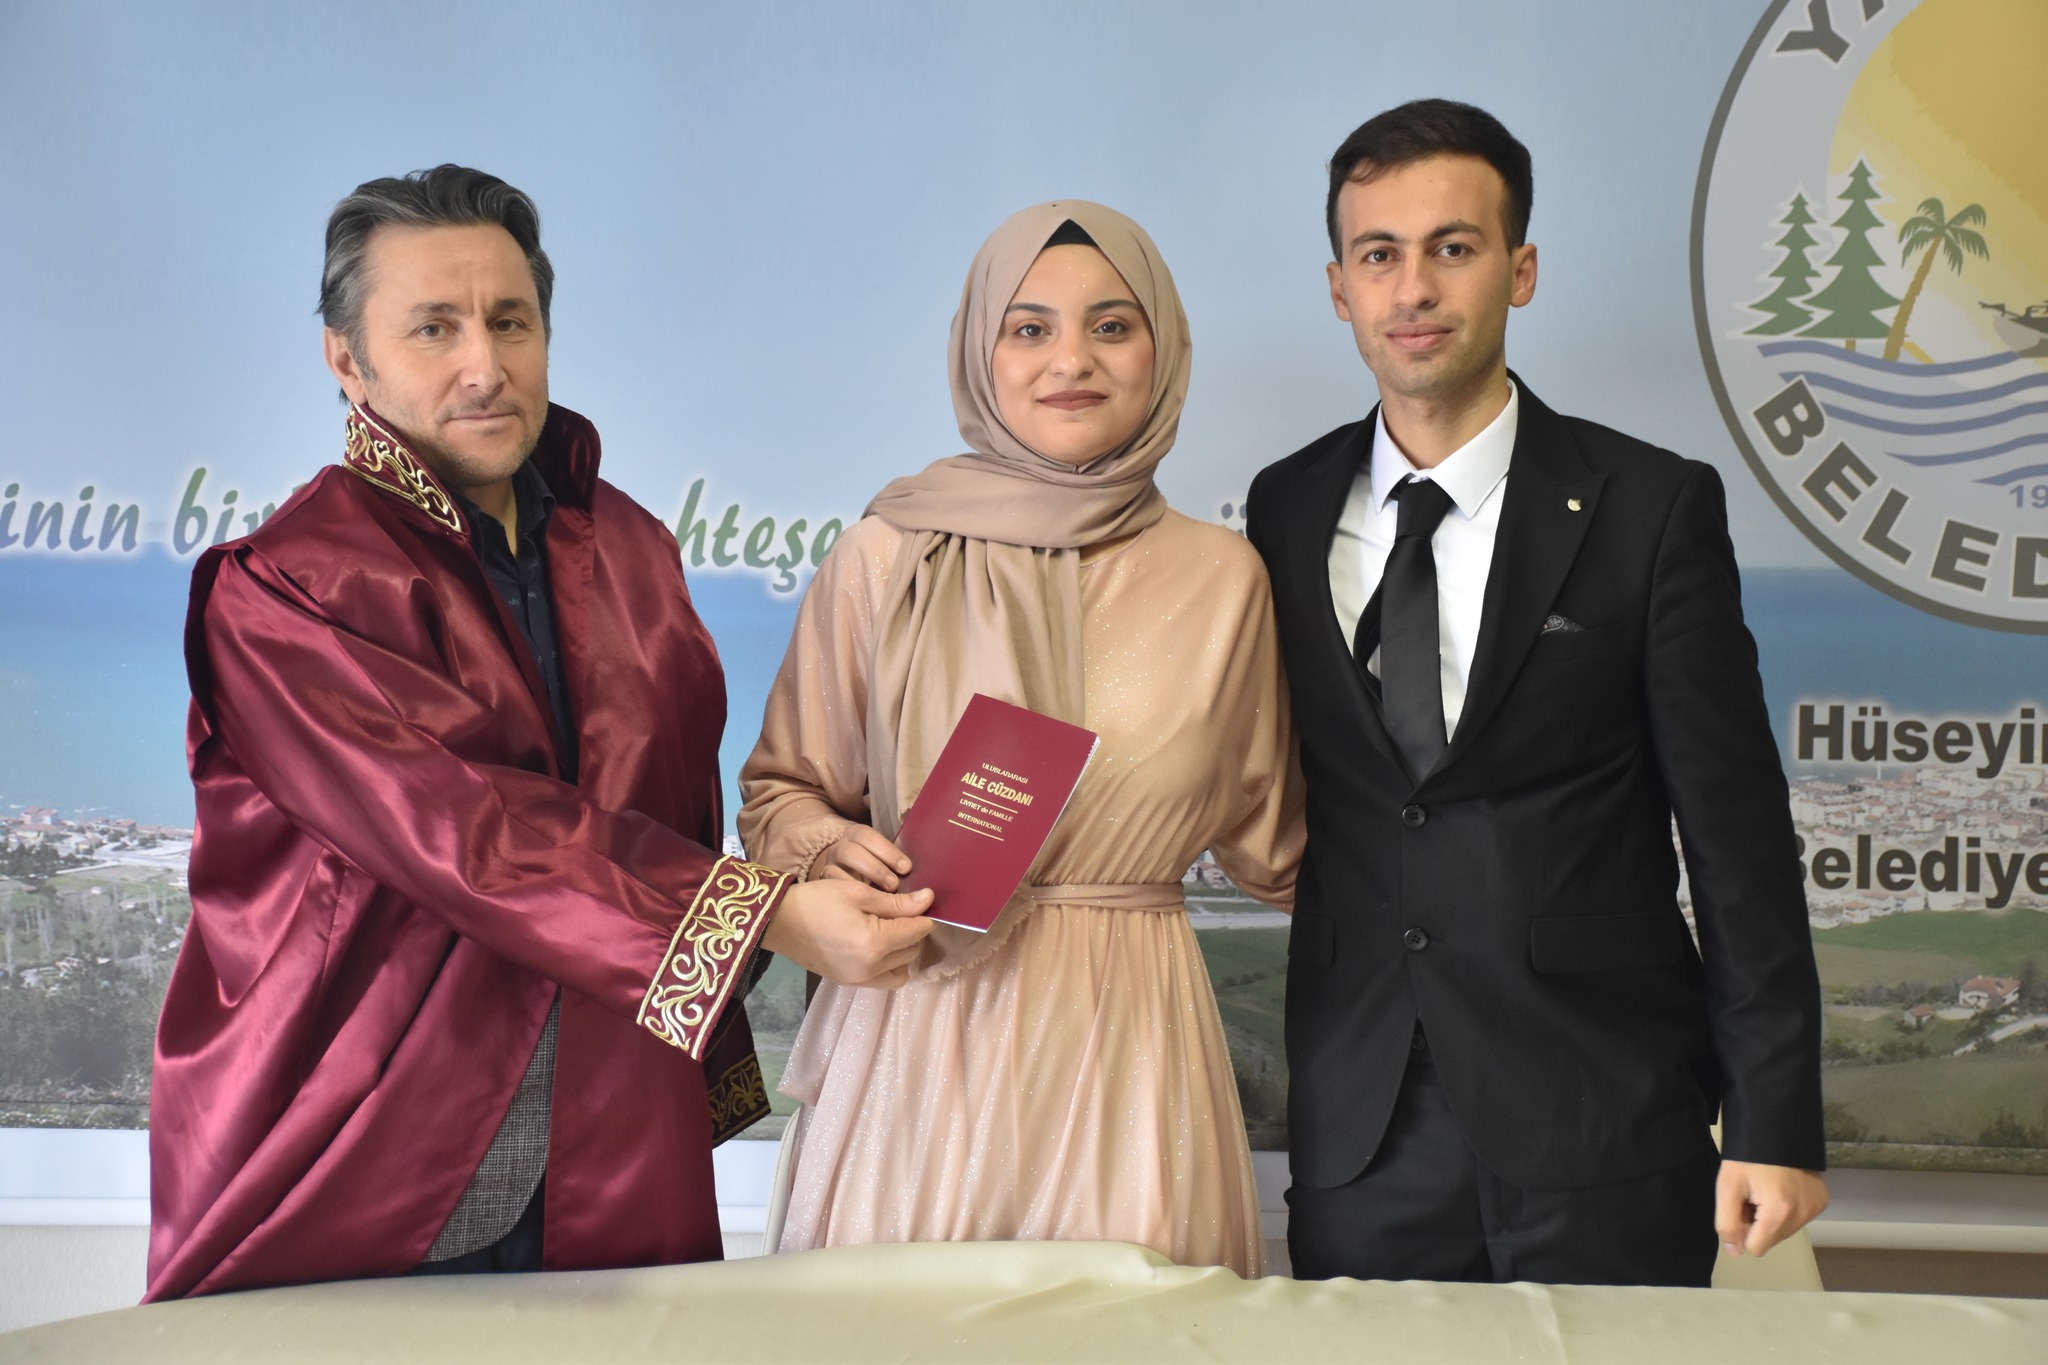 Belediye Başkanımız Hüseyin Kıyma, Neşenur Onur & Mahmut Ergen çiftinin nikah akdini gerçekleştirdi.  Çiftimize bir ömür boyu mutluluklar dileriz.